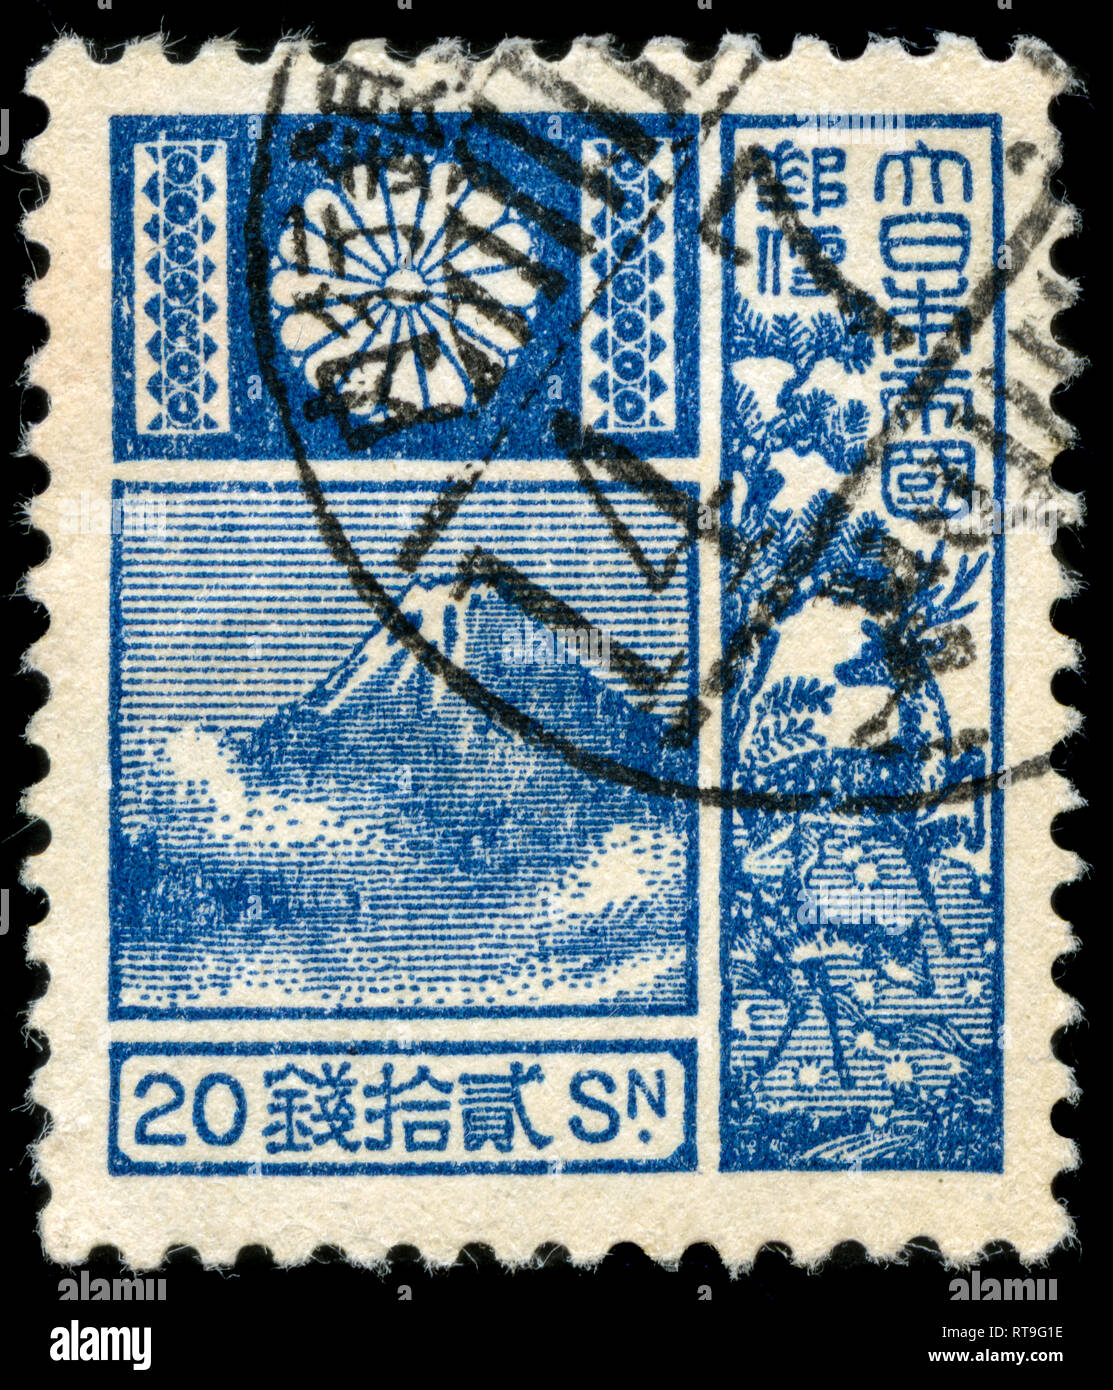 Timbre-poste du Japon dans le Mt Fuji et Virginie (1930-37) - Nouvelle série émise en 1937 Die Banque D'Images